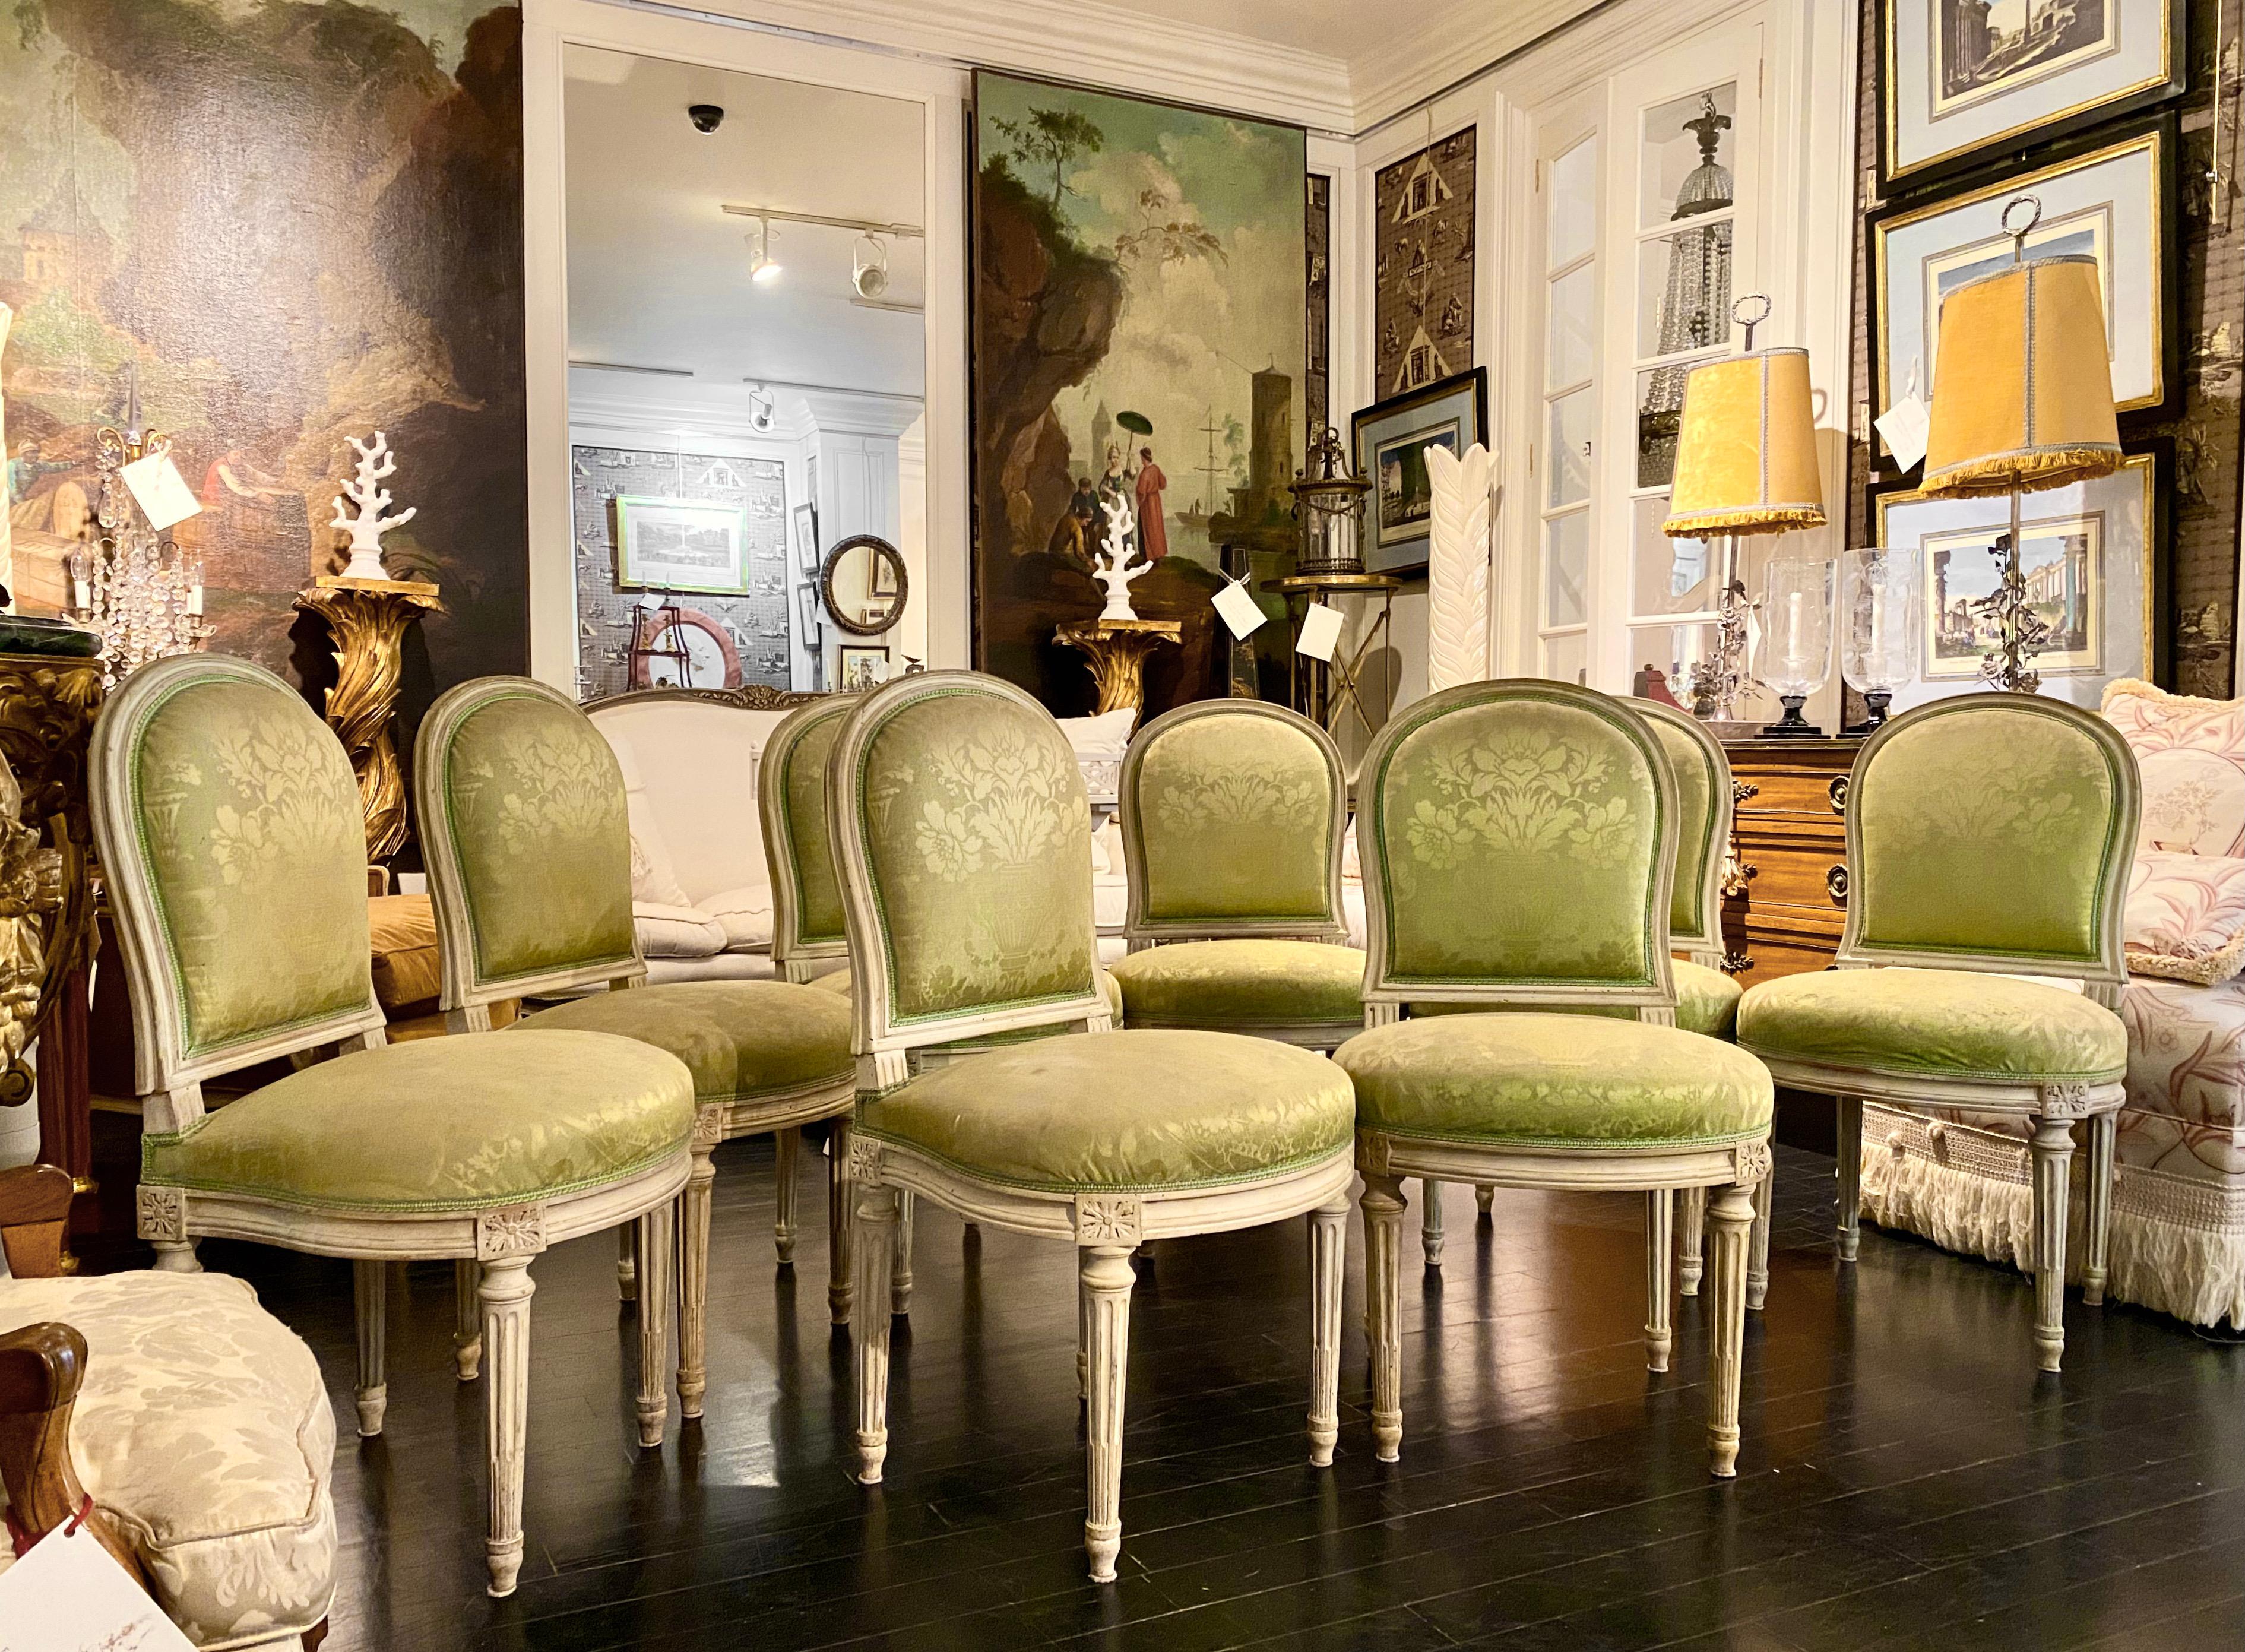 Satz von 8 französischen Stühlen im Stil Louis XVI.
Bemaltes und patiniertes Holz, gepolstert mit blassgrünem Damast, schönes Modell.